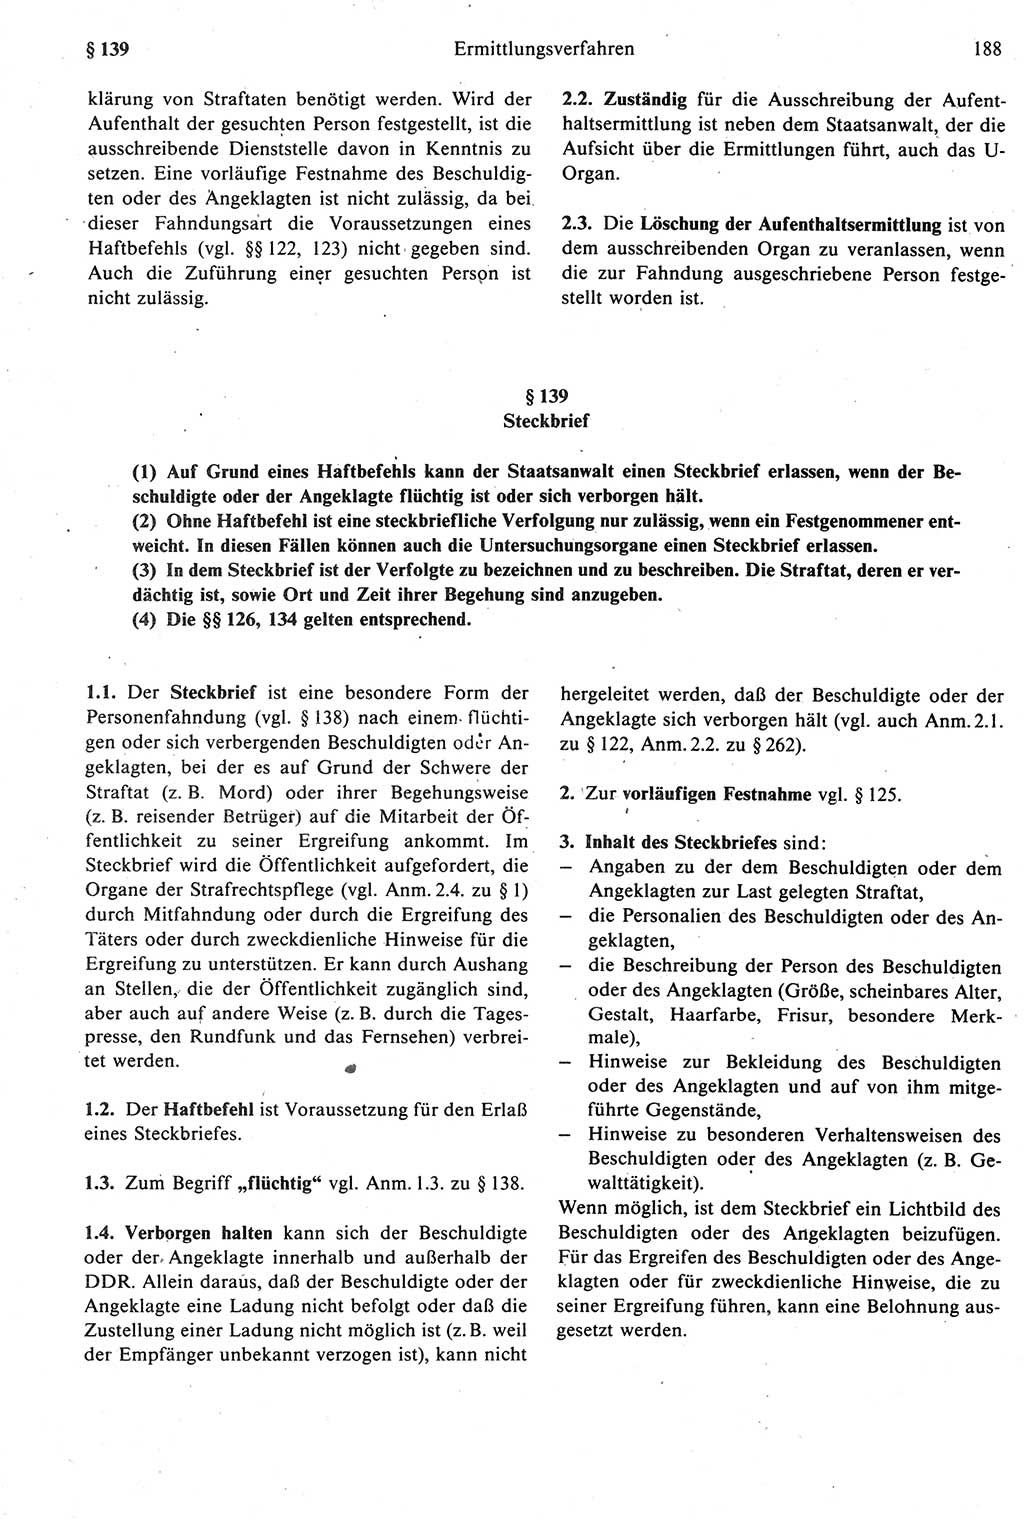 Strafprozeßrecht der DDR [Deutsche Demokratische Republik], Kommentar zur Strafprozeßordnung (StPO) 1987, Seite 188 (Strafprozeßr. DDR Komm. StPO 1987, S. 188)